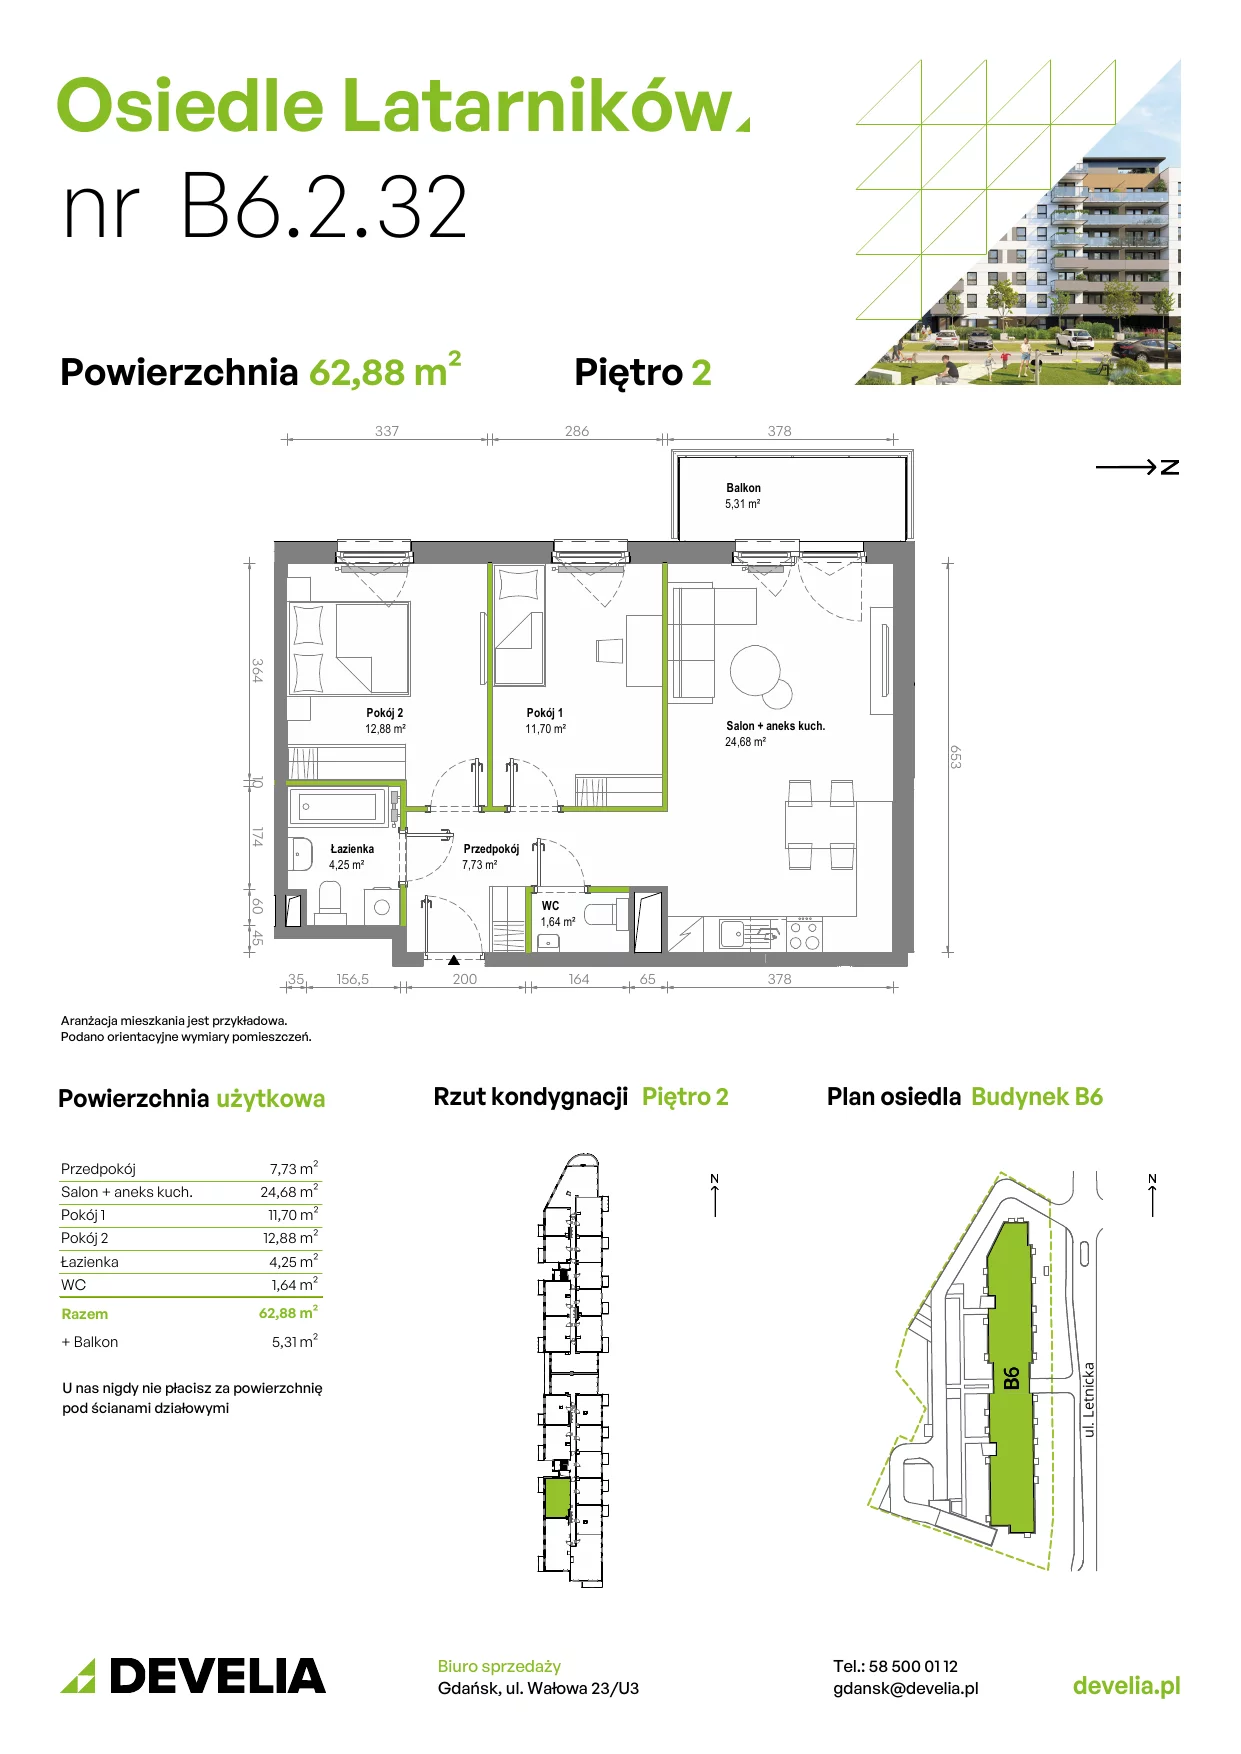 Mieszkanie 62,79 m², piętro 2, oferta nr B6.2.032, Osiedle Latarników, Gdańsk, Letnica, ul. Letnicka 1